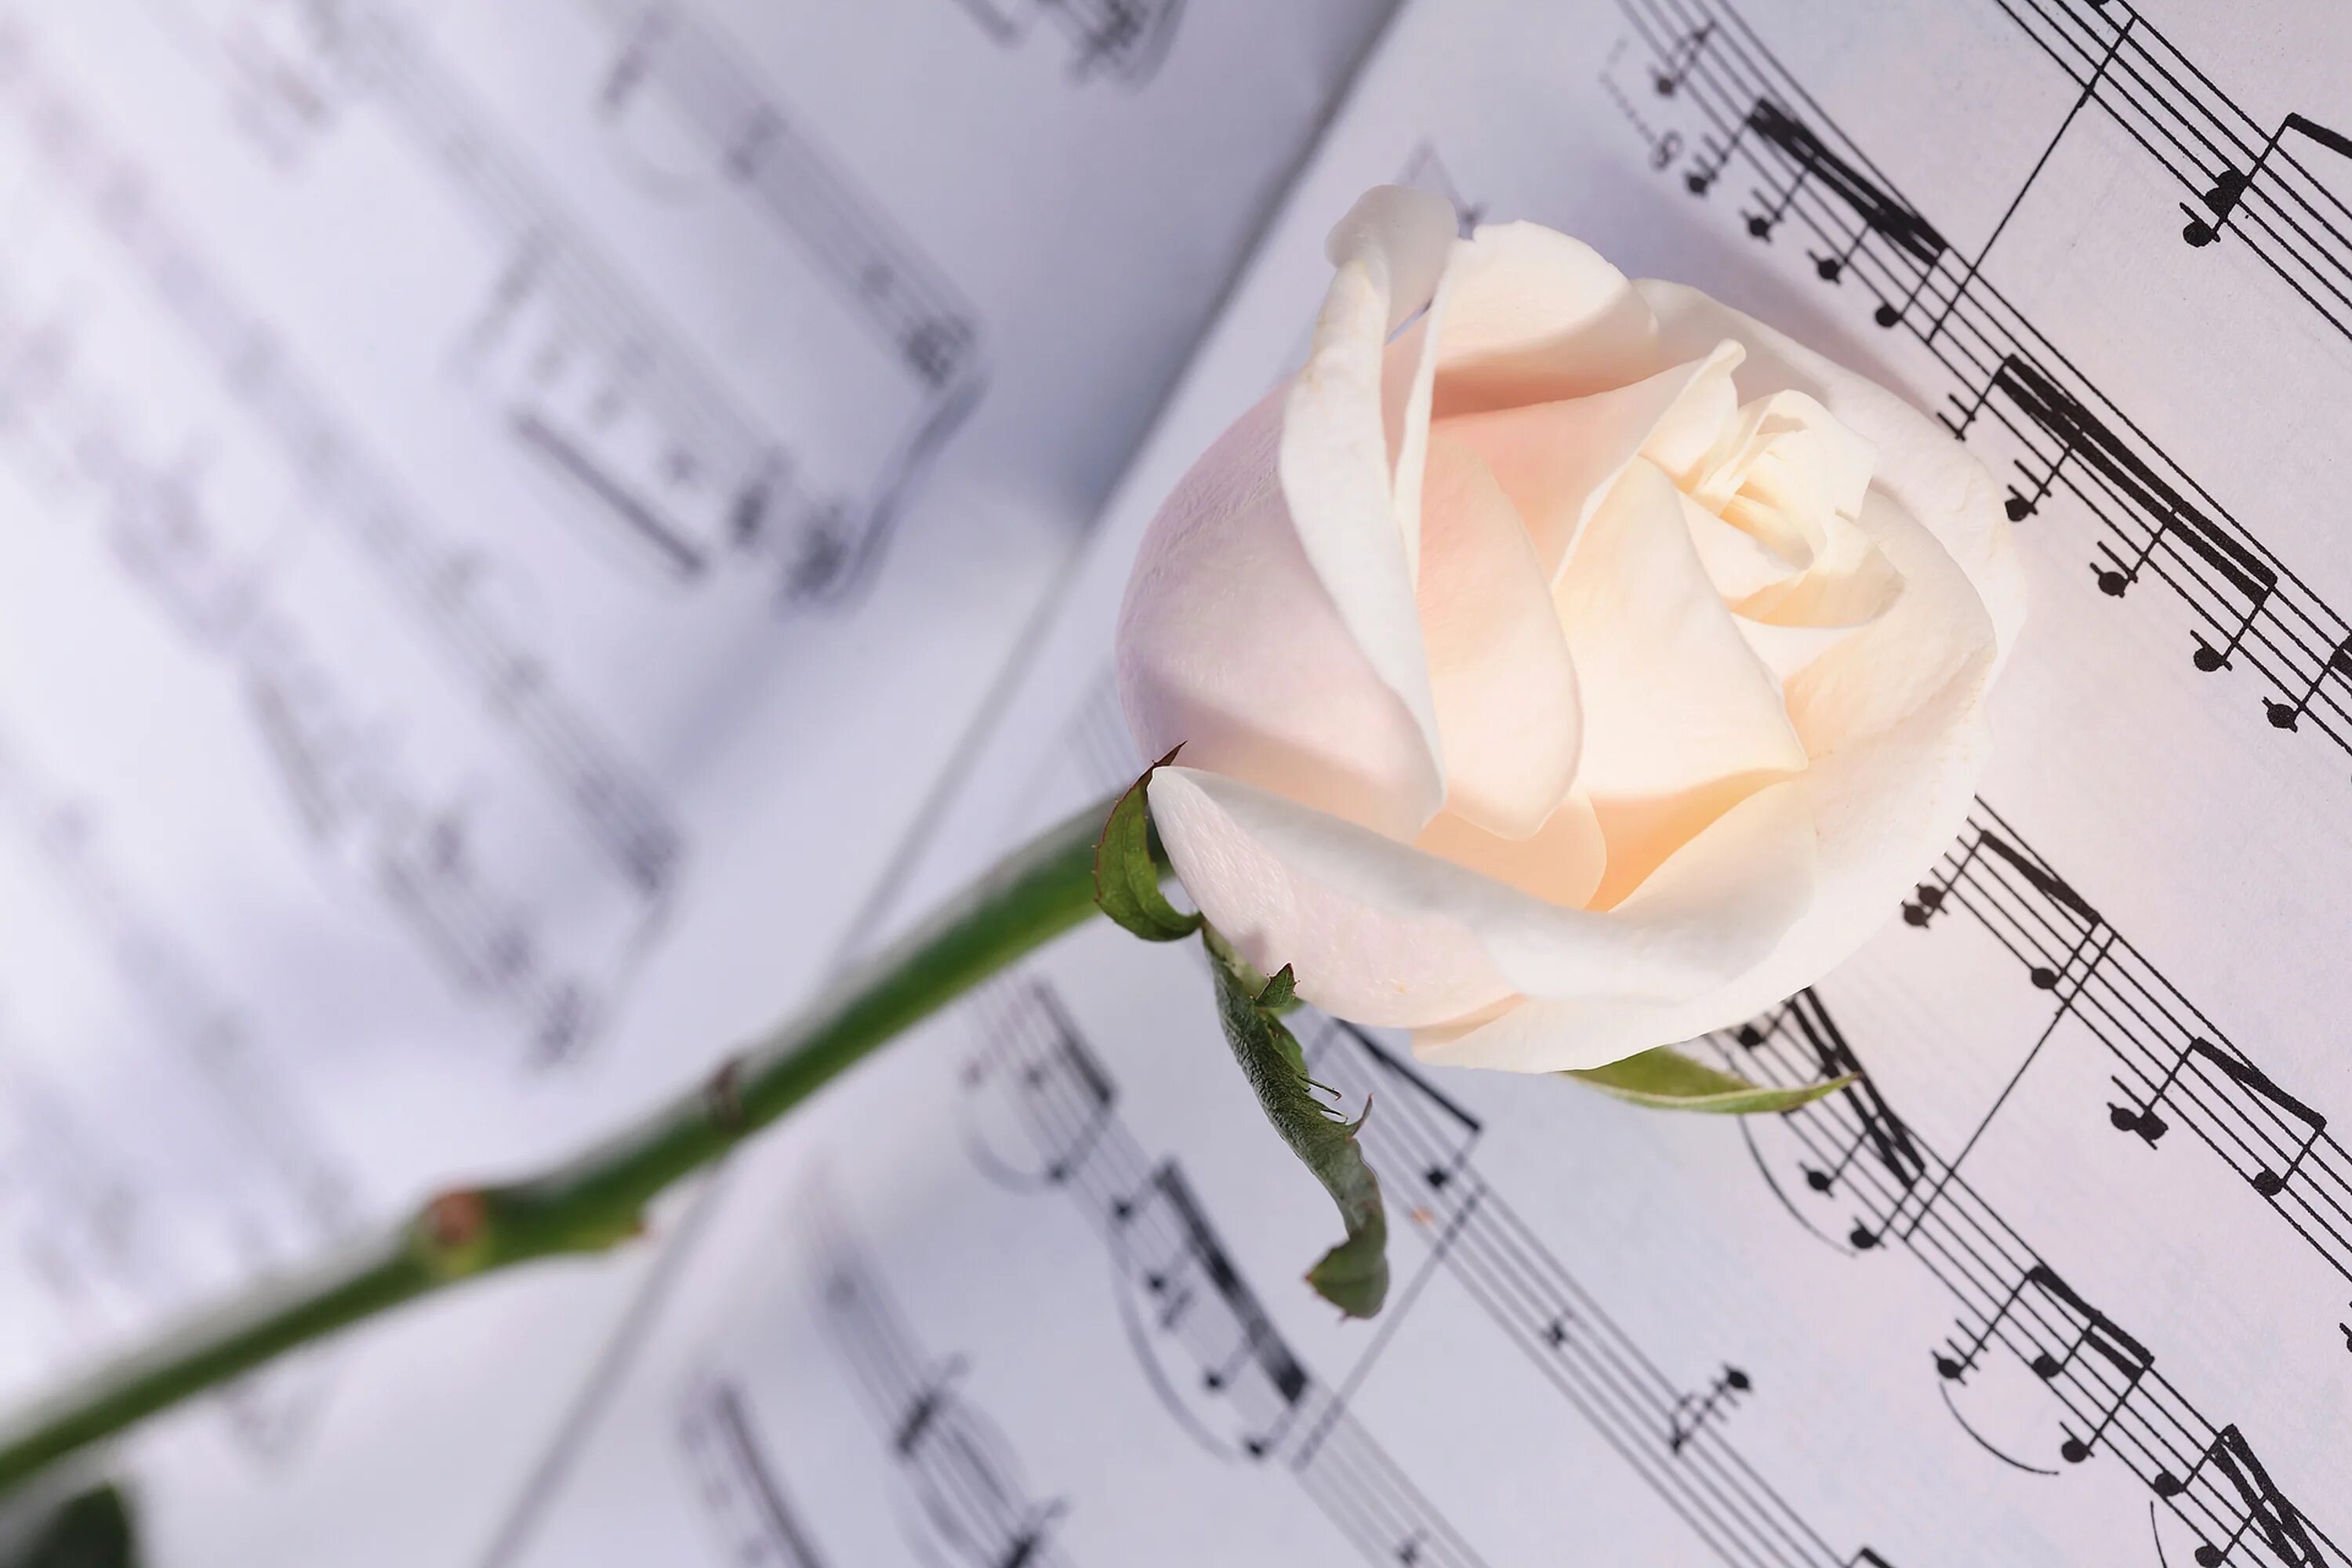 Нежная музыка шопена. Ноты и цветы. Нежный цветок. Красивый фон с нотами и цветами. Белые розы.